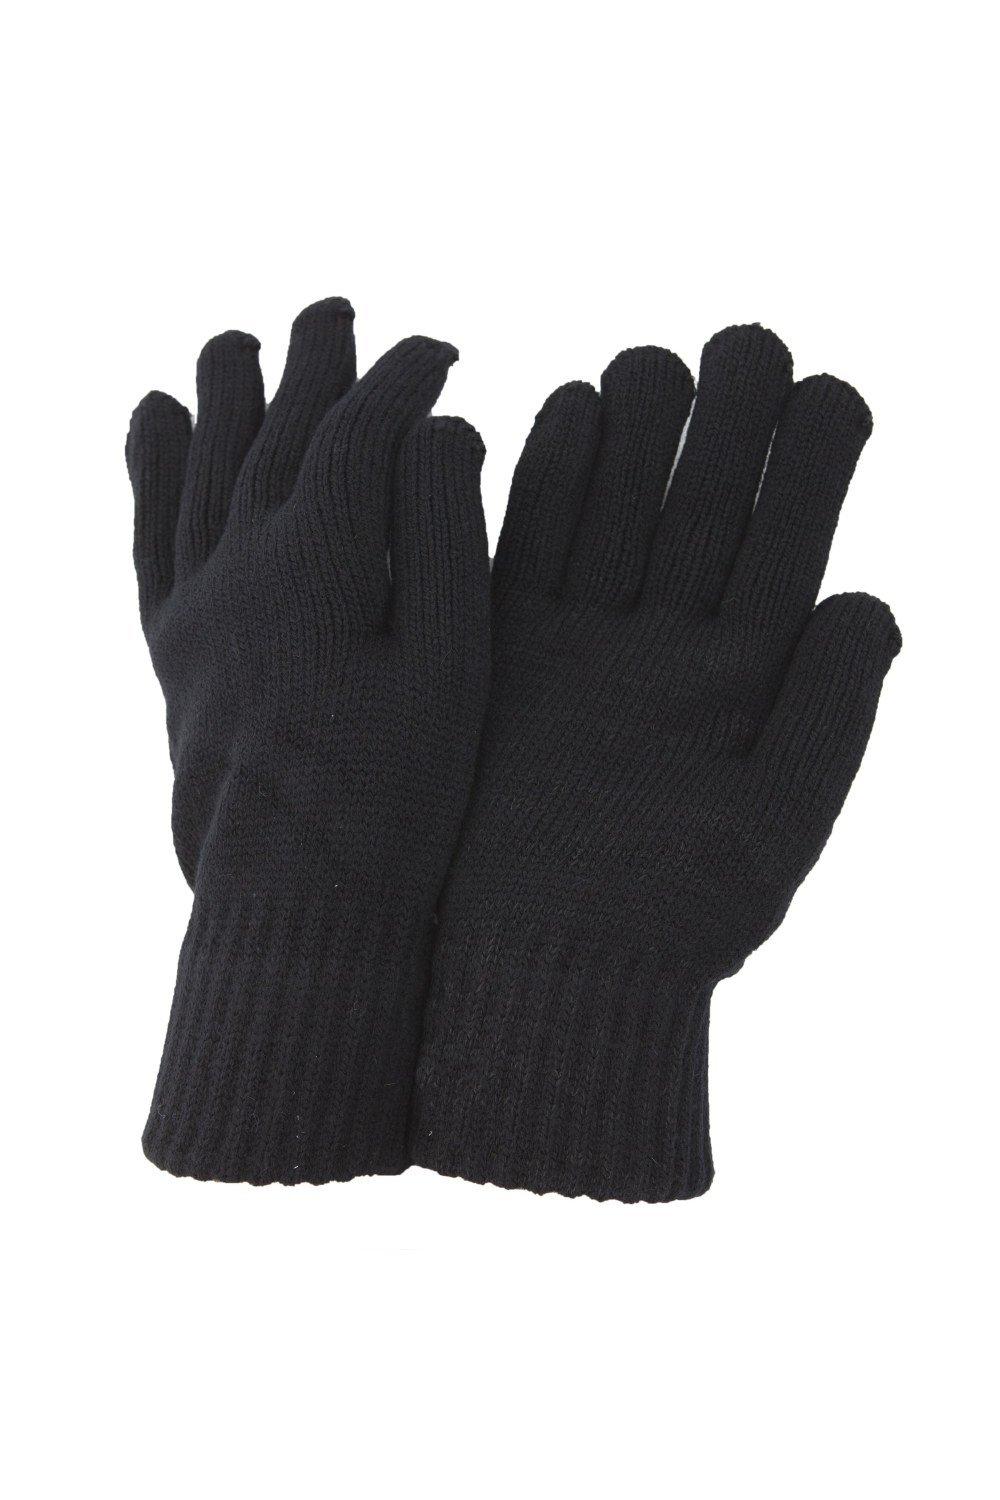 РАСПРОДАЖА - Термовязаные зимние перчатки Universal Textiles, черный распродажа термовязаные зимние перчатки universal textiles черный